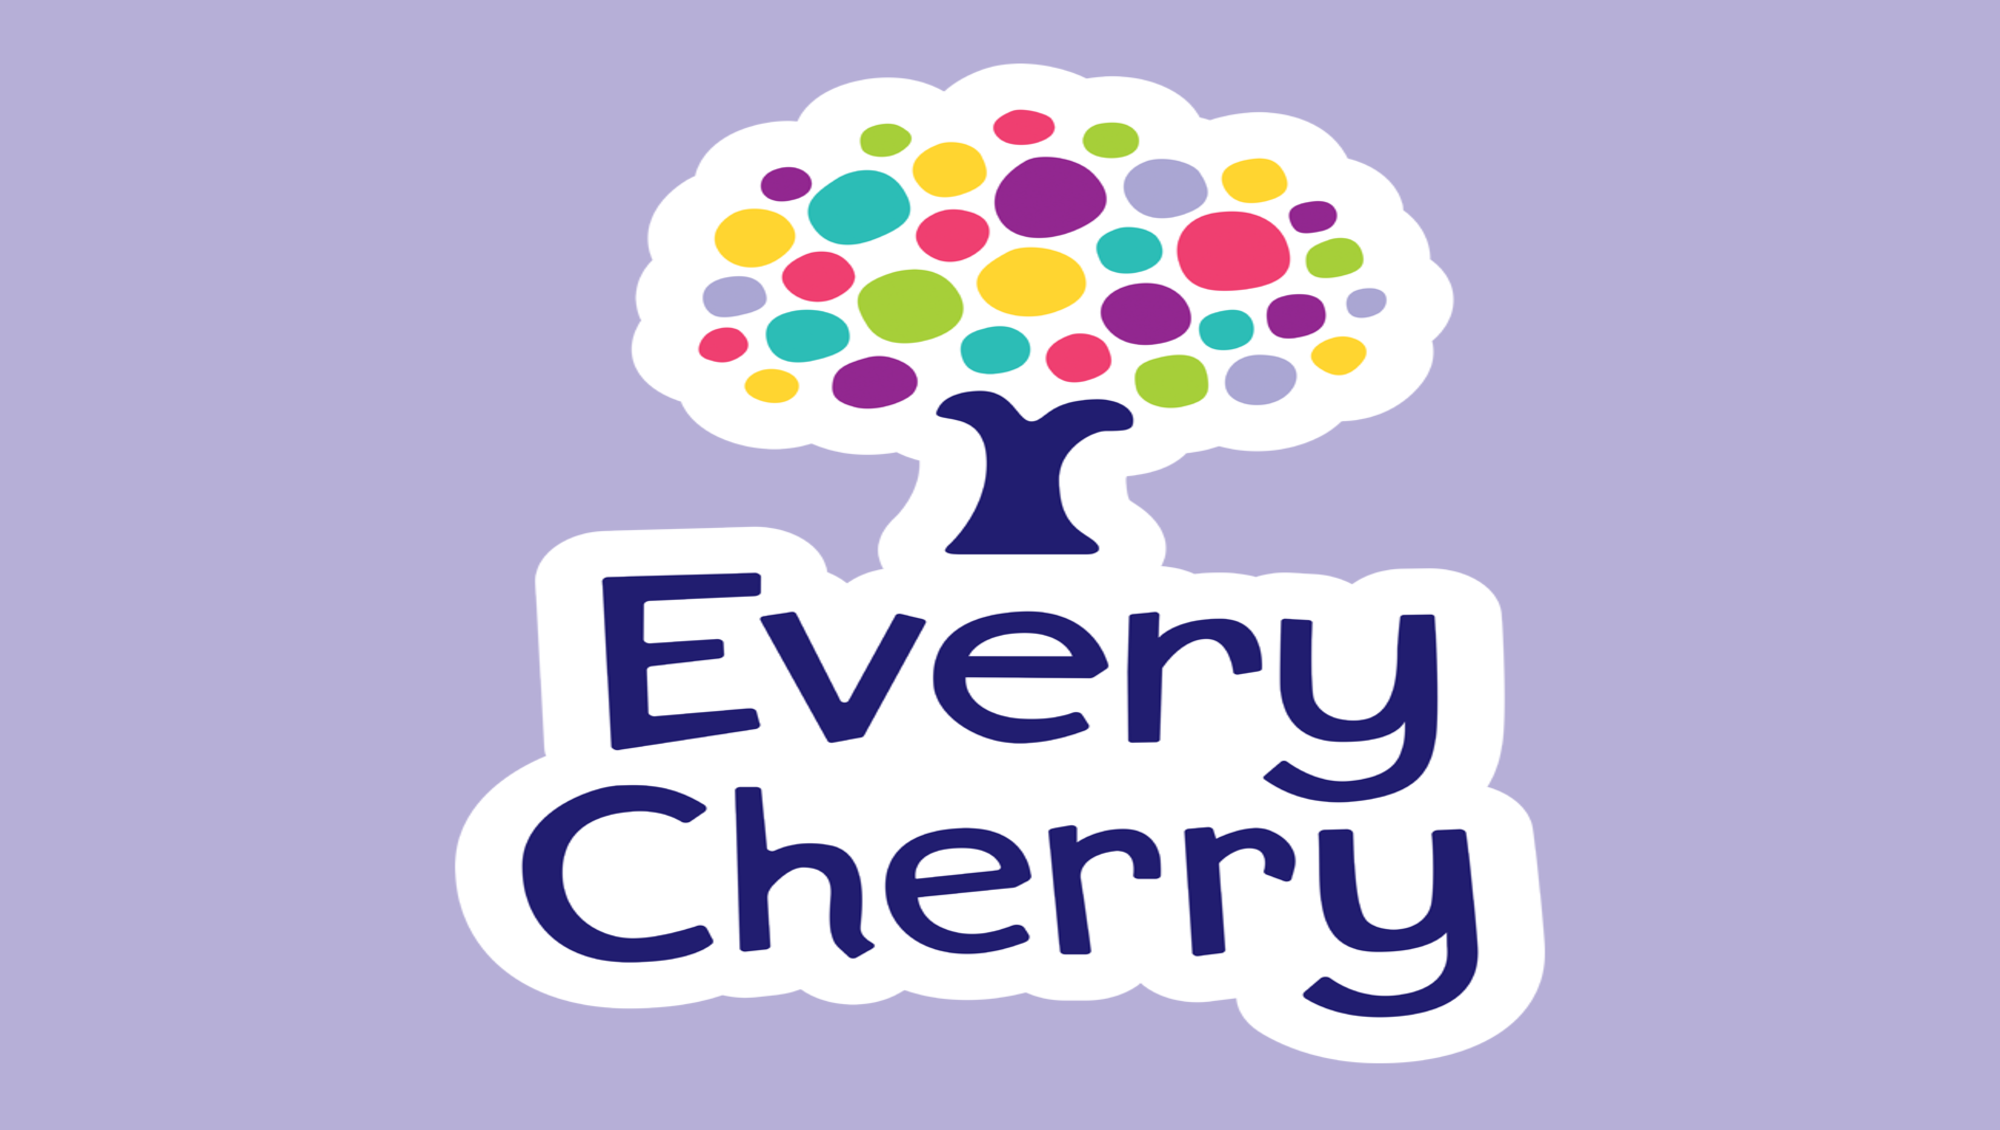 Every Cherry